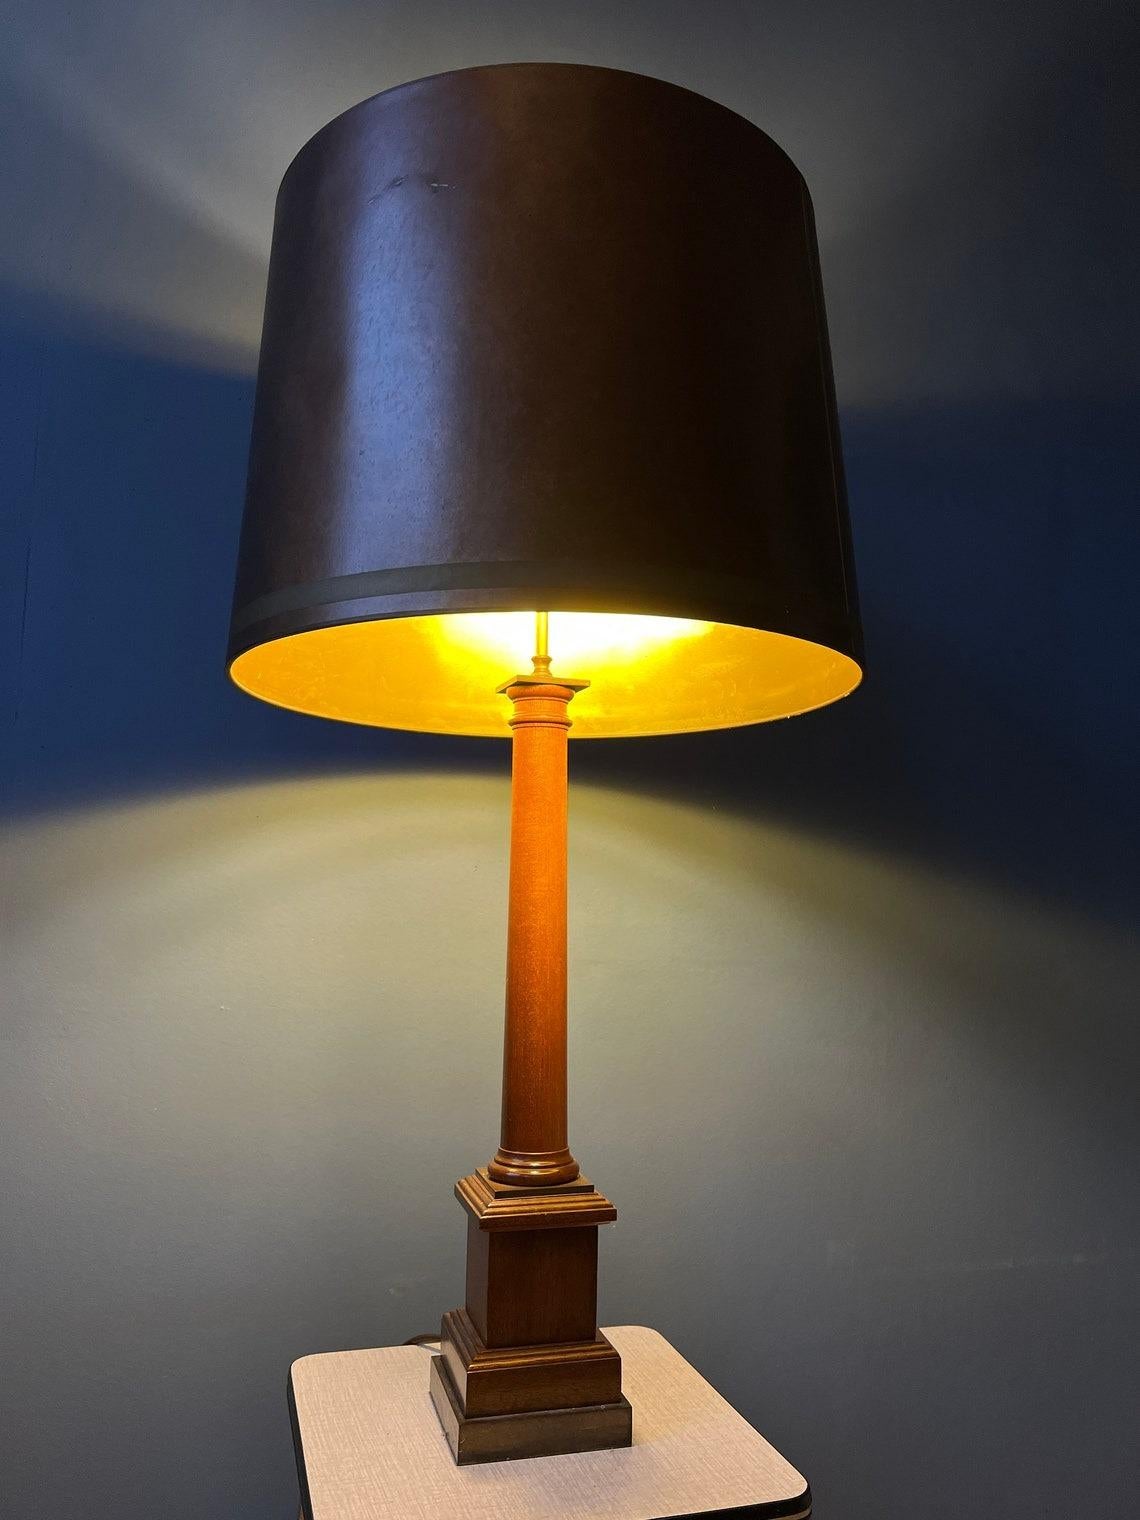 Bigli lampe à poser vintage éclectique base en bois et abat-jour couleur cuivre. La lampe nécessite deux ampoules E27/26 et dispose actuellement d'une fiche de connexion à l'UE.

Informations complémentaires :
MATERIAL : Tissu, bois
Période :